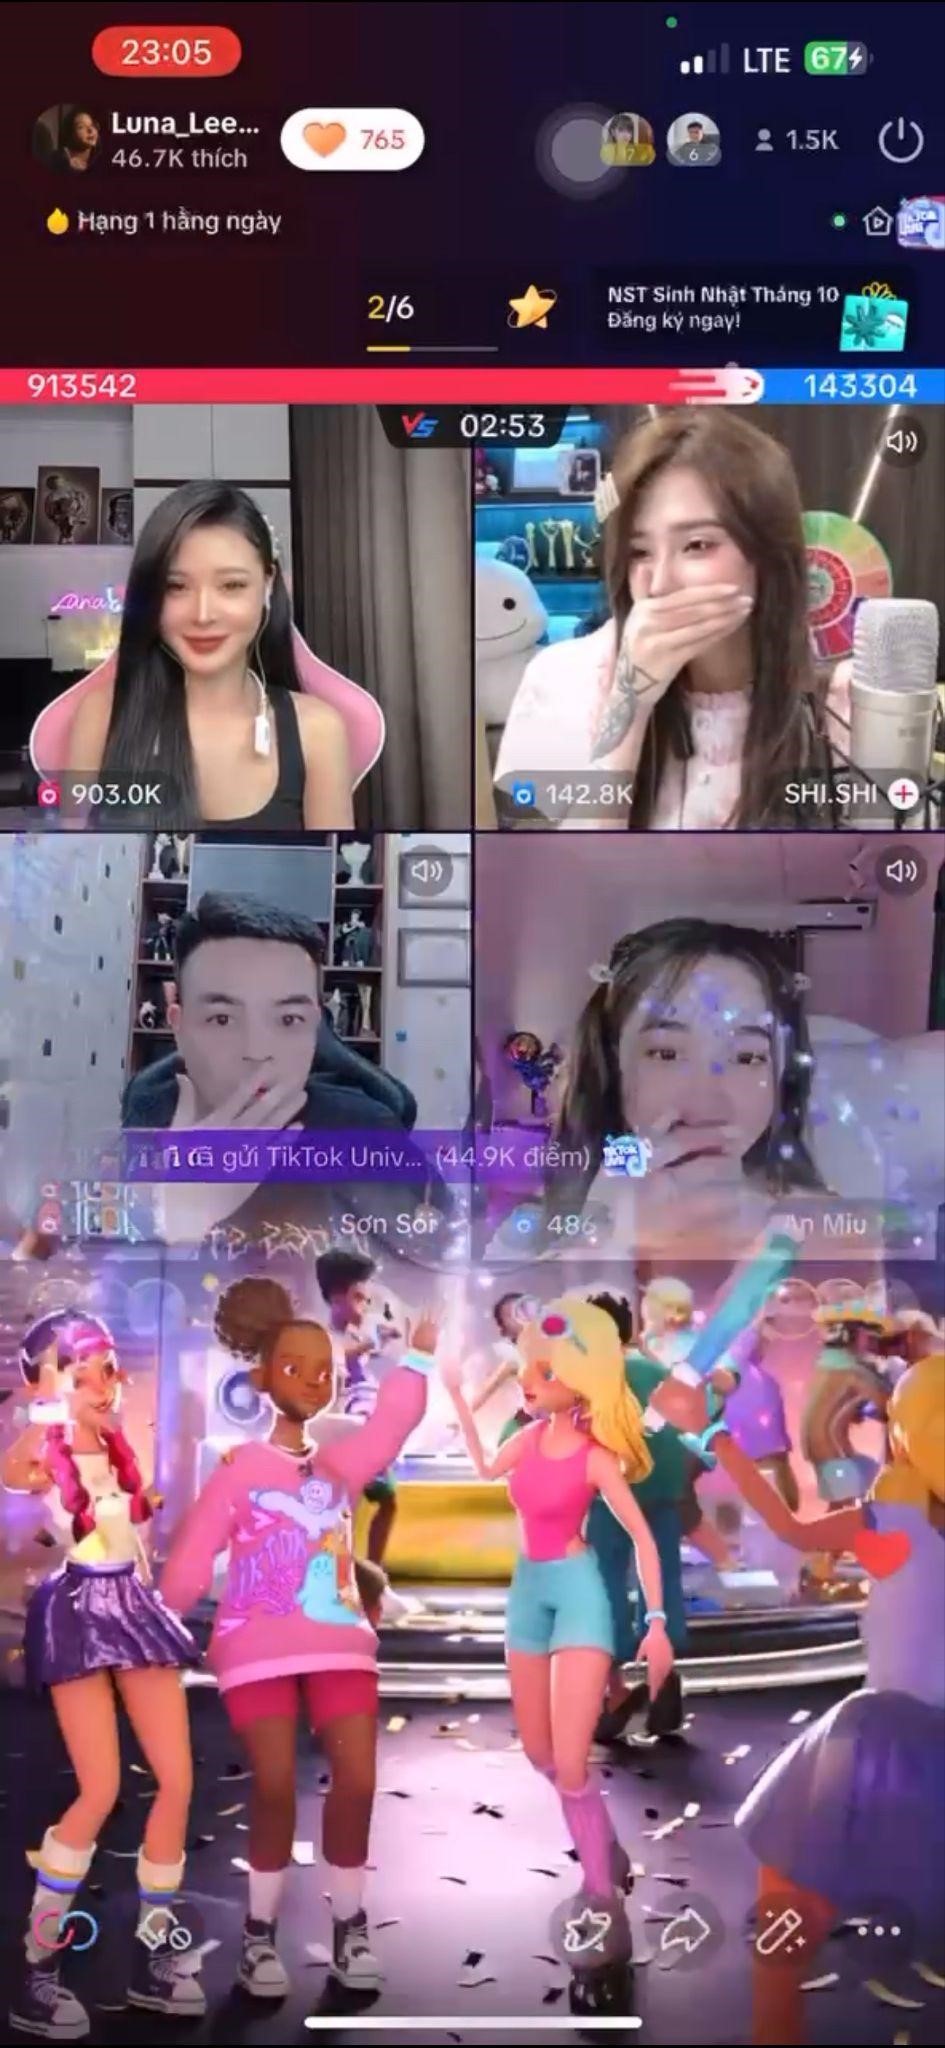 Cô gái Hà Thành Luna Lee “lội ngược dòng” trở thành hot TikTok live gây sốt mạng xã hội - ảnh 3